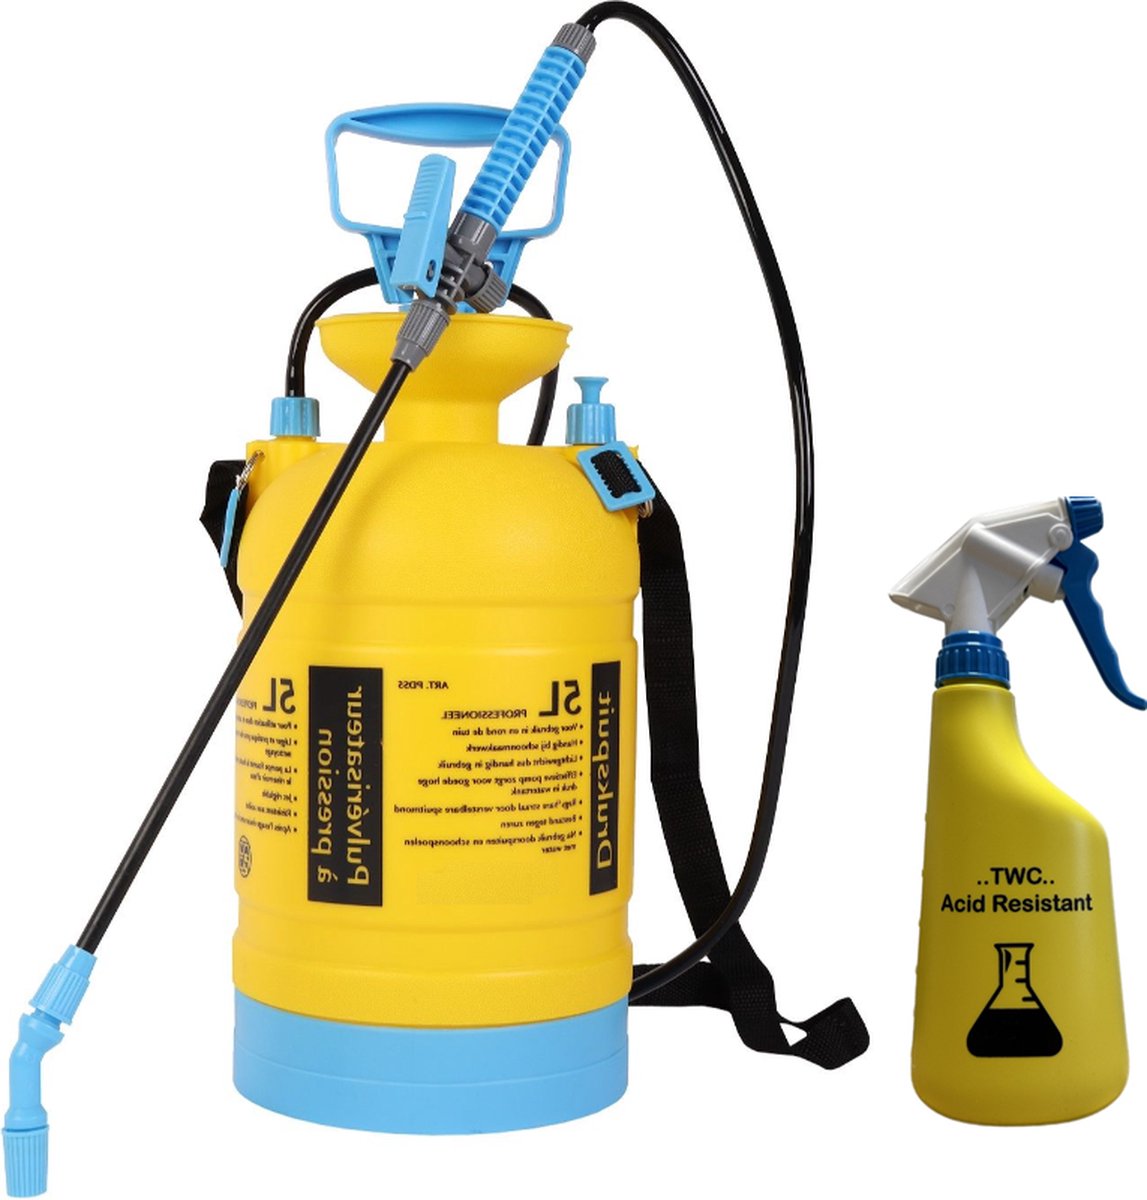 Drukspuit 5 liter - PRO (bestand tegen azijn en zuren) - TWC - zuurbestendig - SET incl. 600ml sprayer - TWC - TT